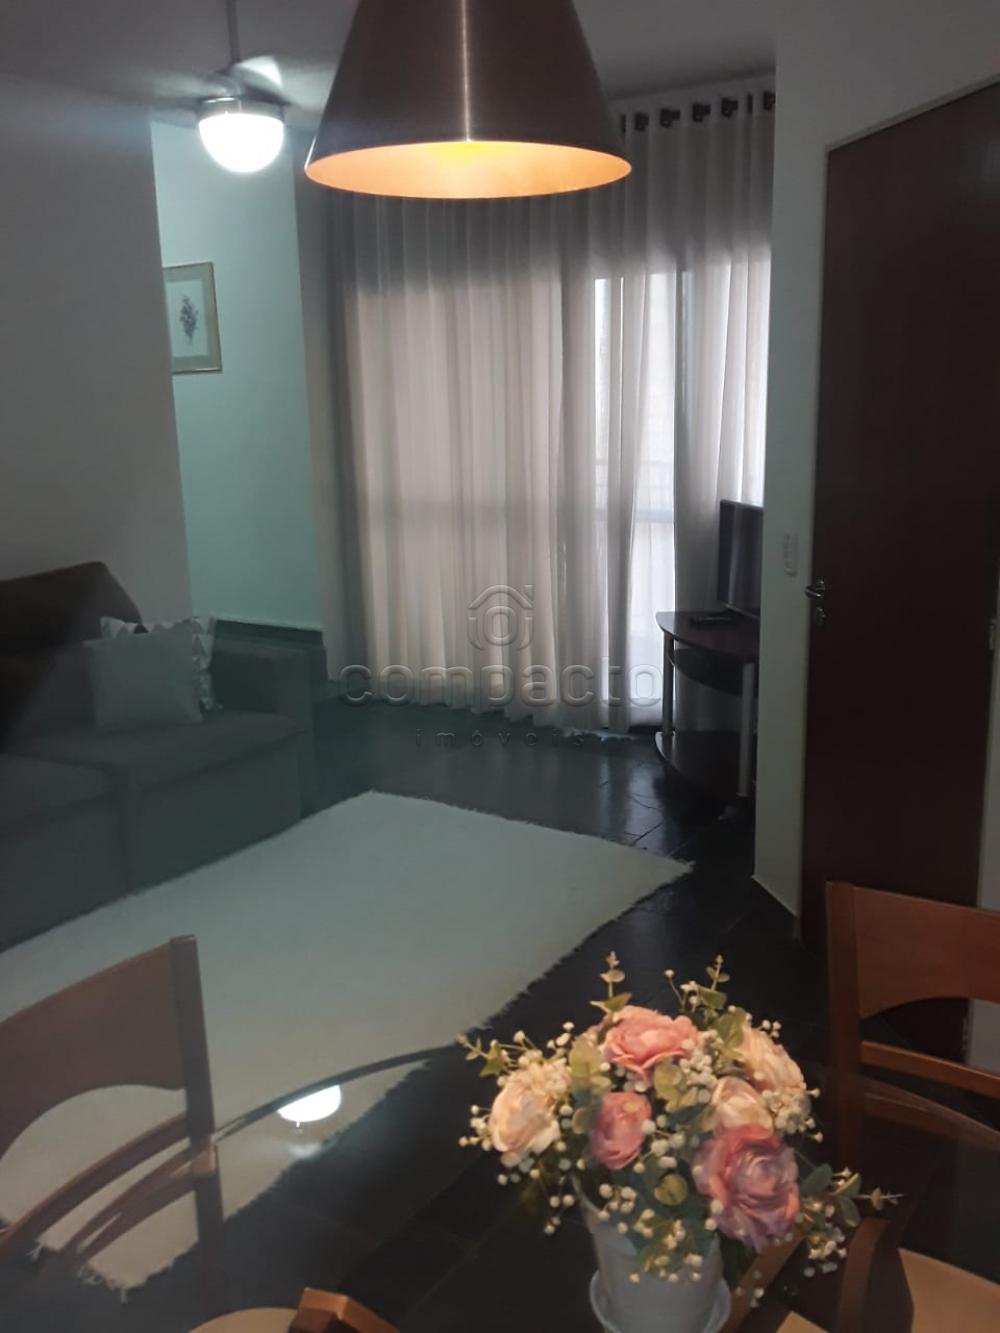 Alugar Apartamento / Padrão em São José do Rio Preto R$ 1.300,00 - Foto 1